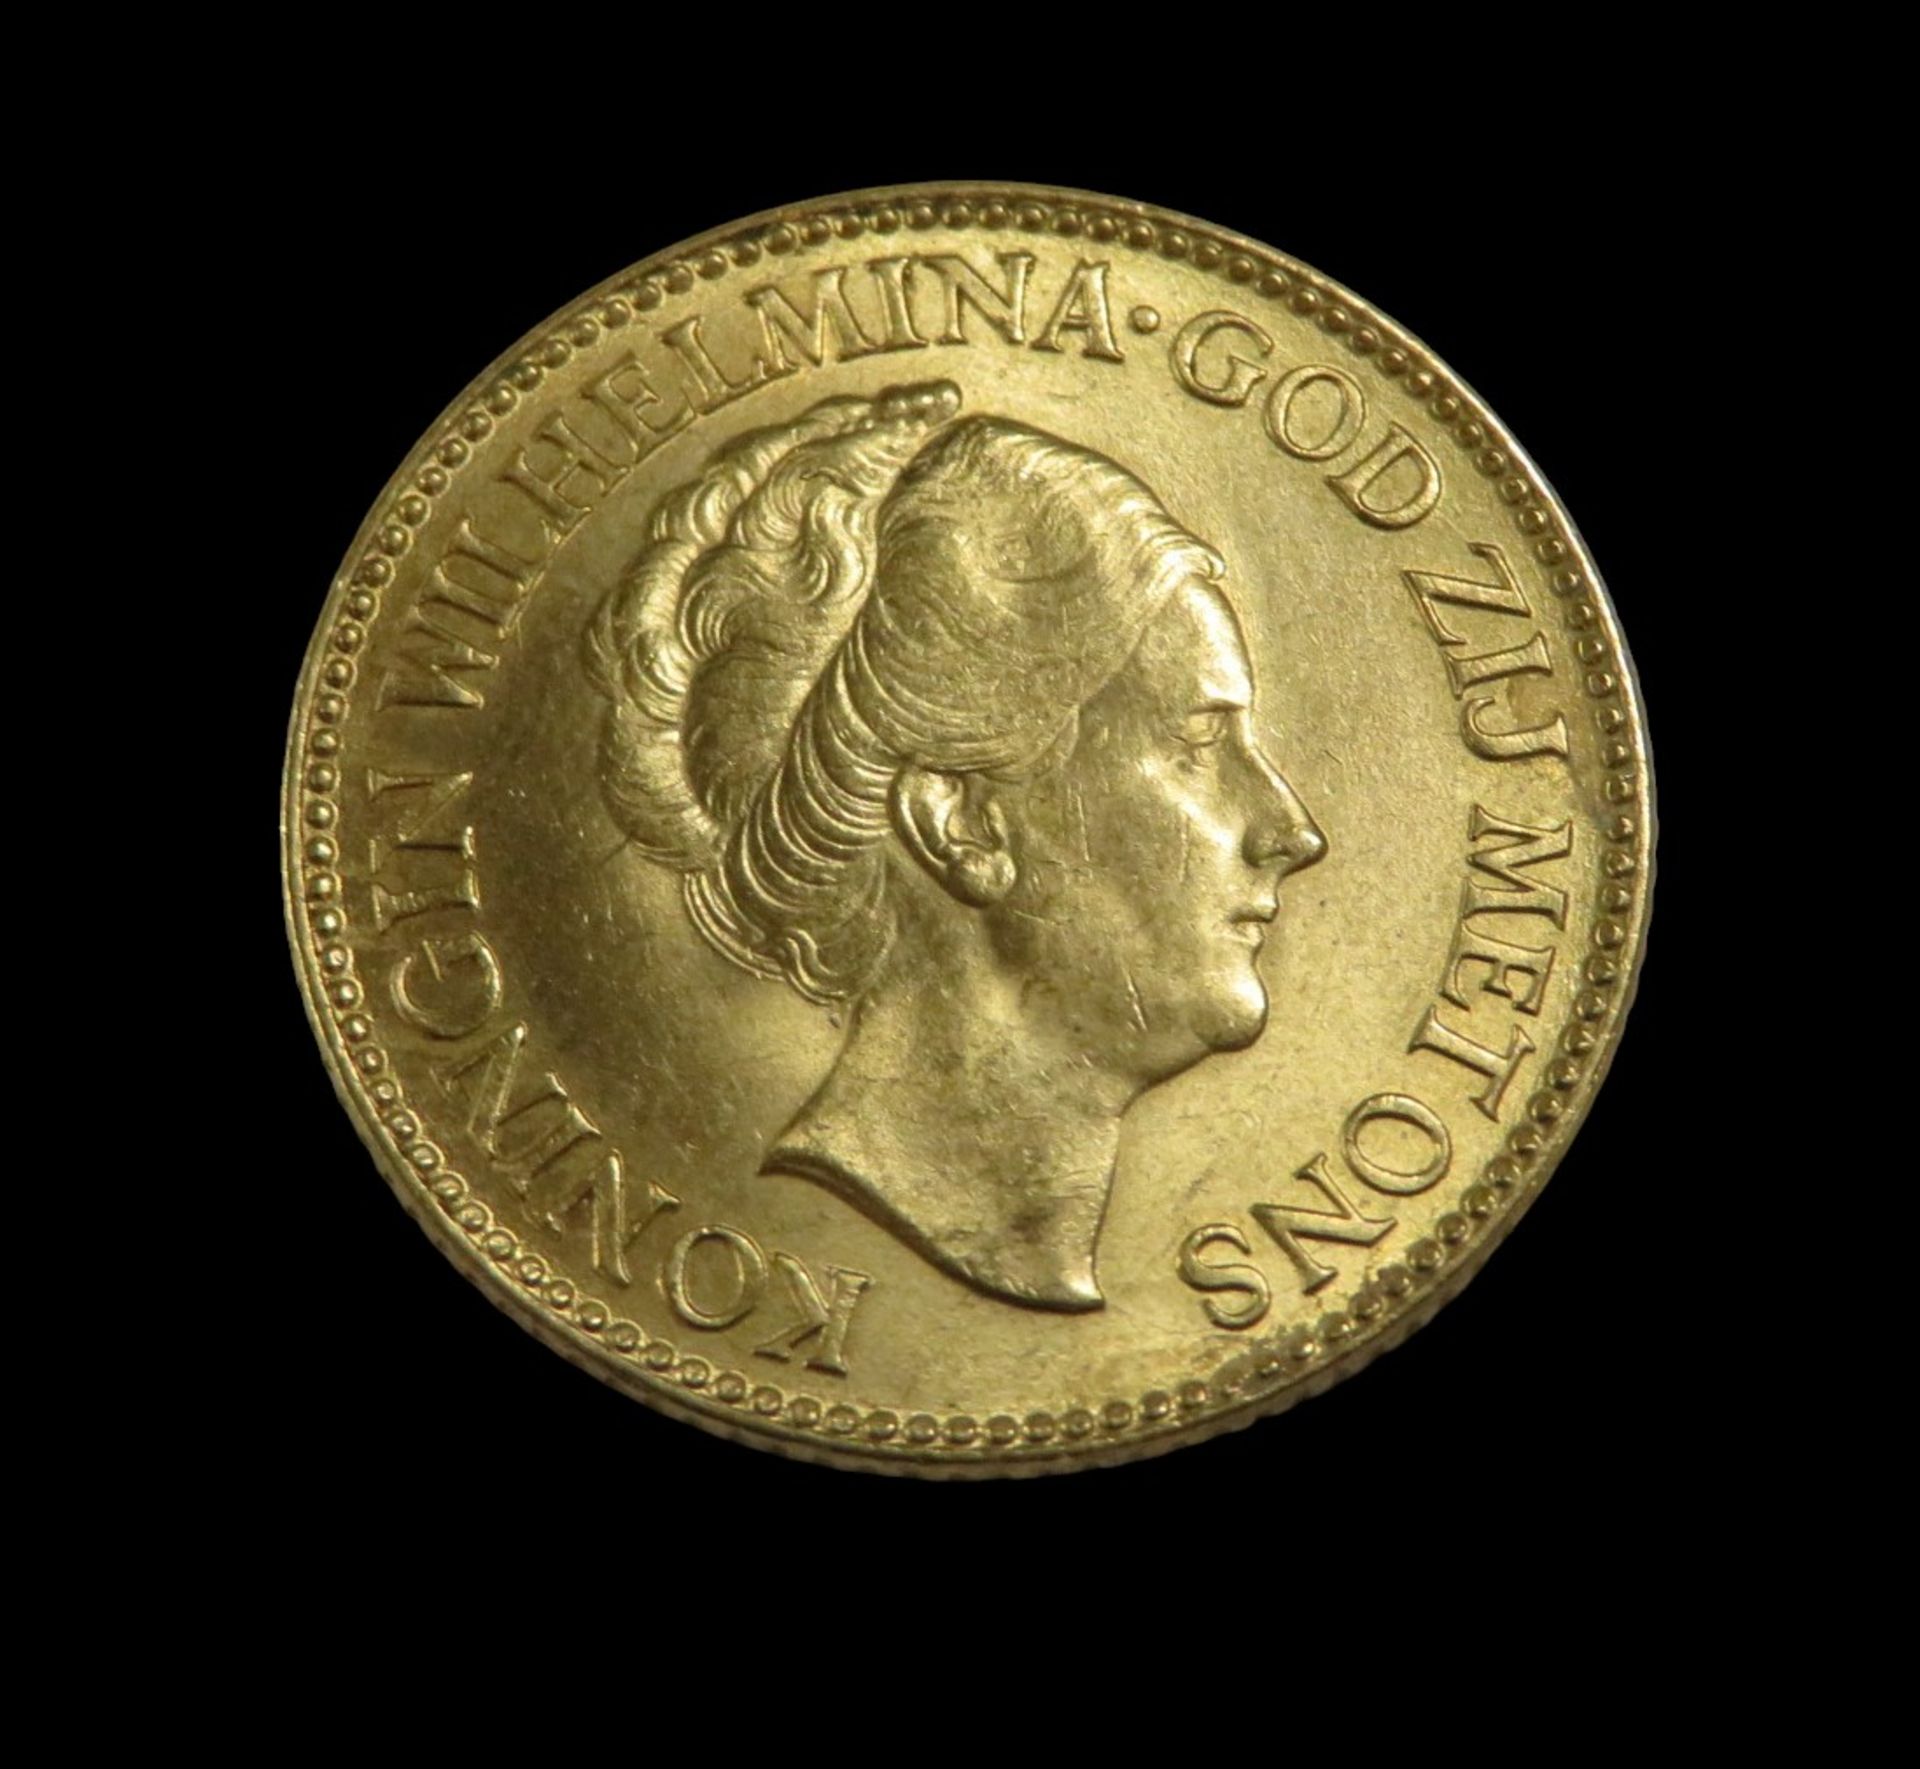 Goldmünze, Niederlande, 10 Gulden, Wilhelmina, 1933, Gold 900/000, 6,7 g, d 2,1 cm.